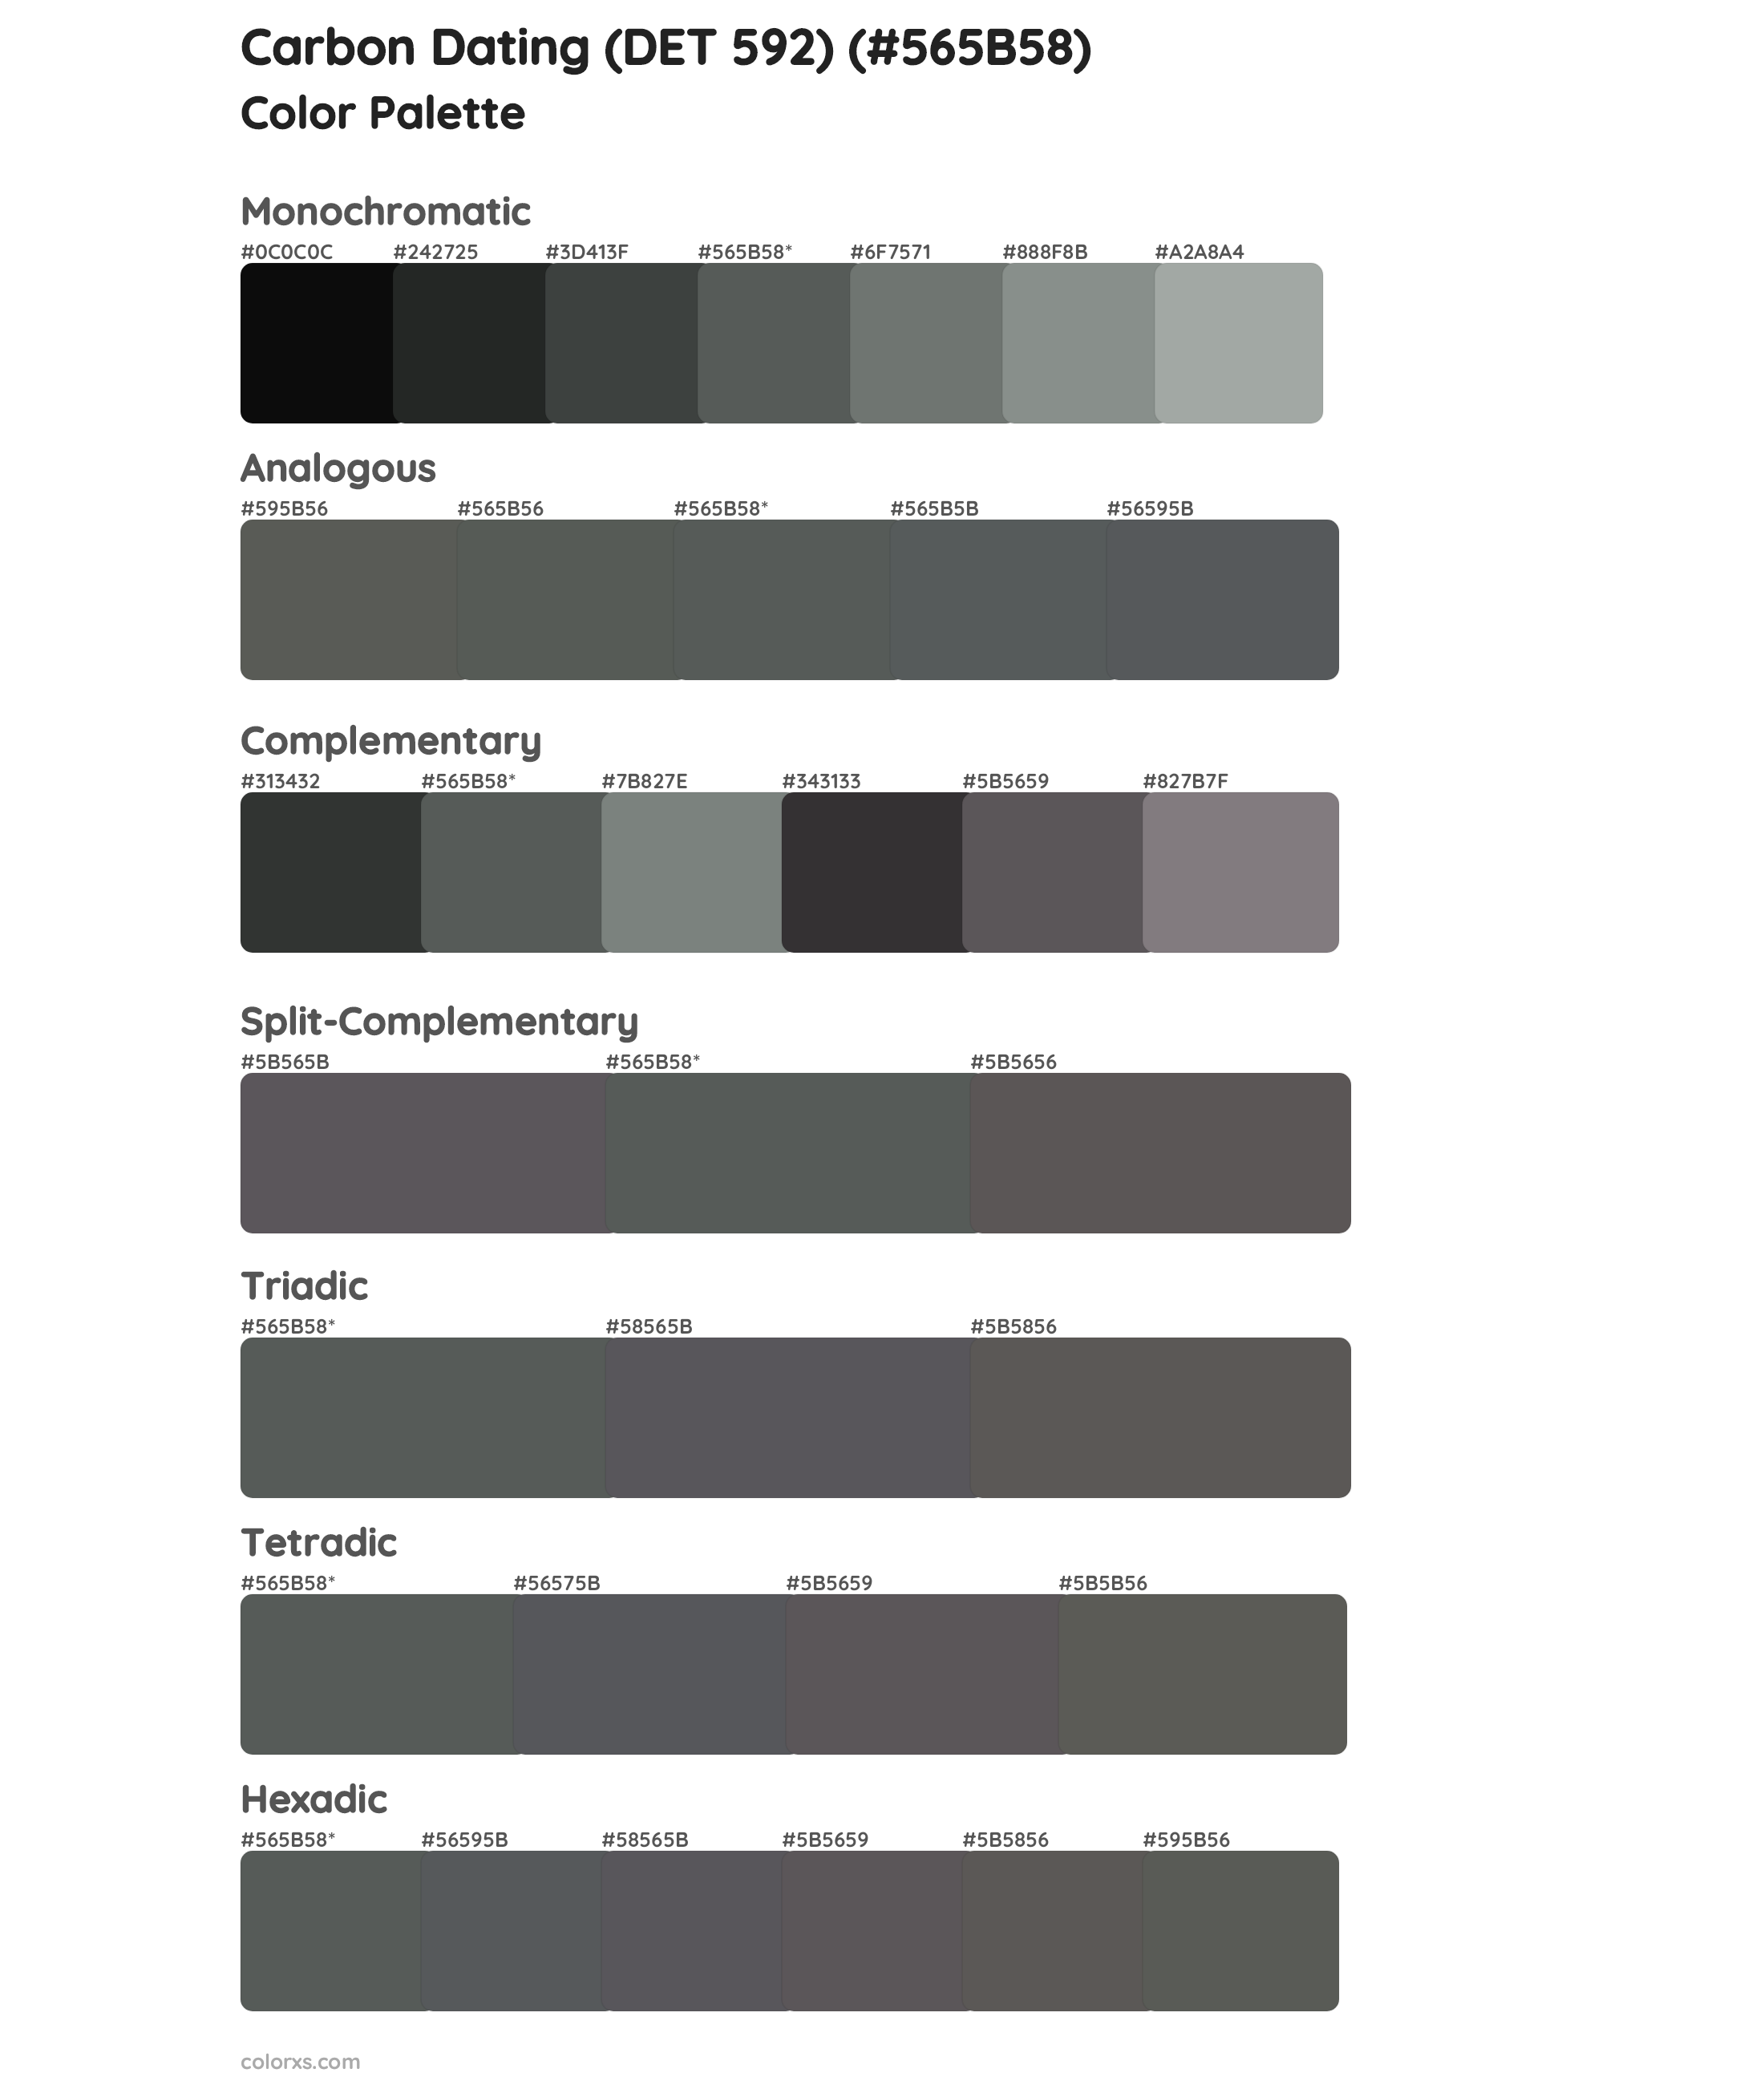 Carbon Dating (DET 592) Color Scheme Palettes